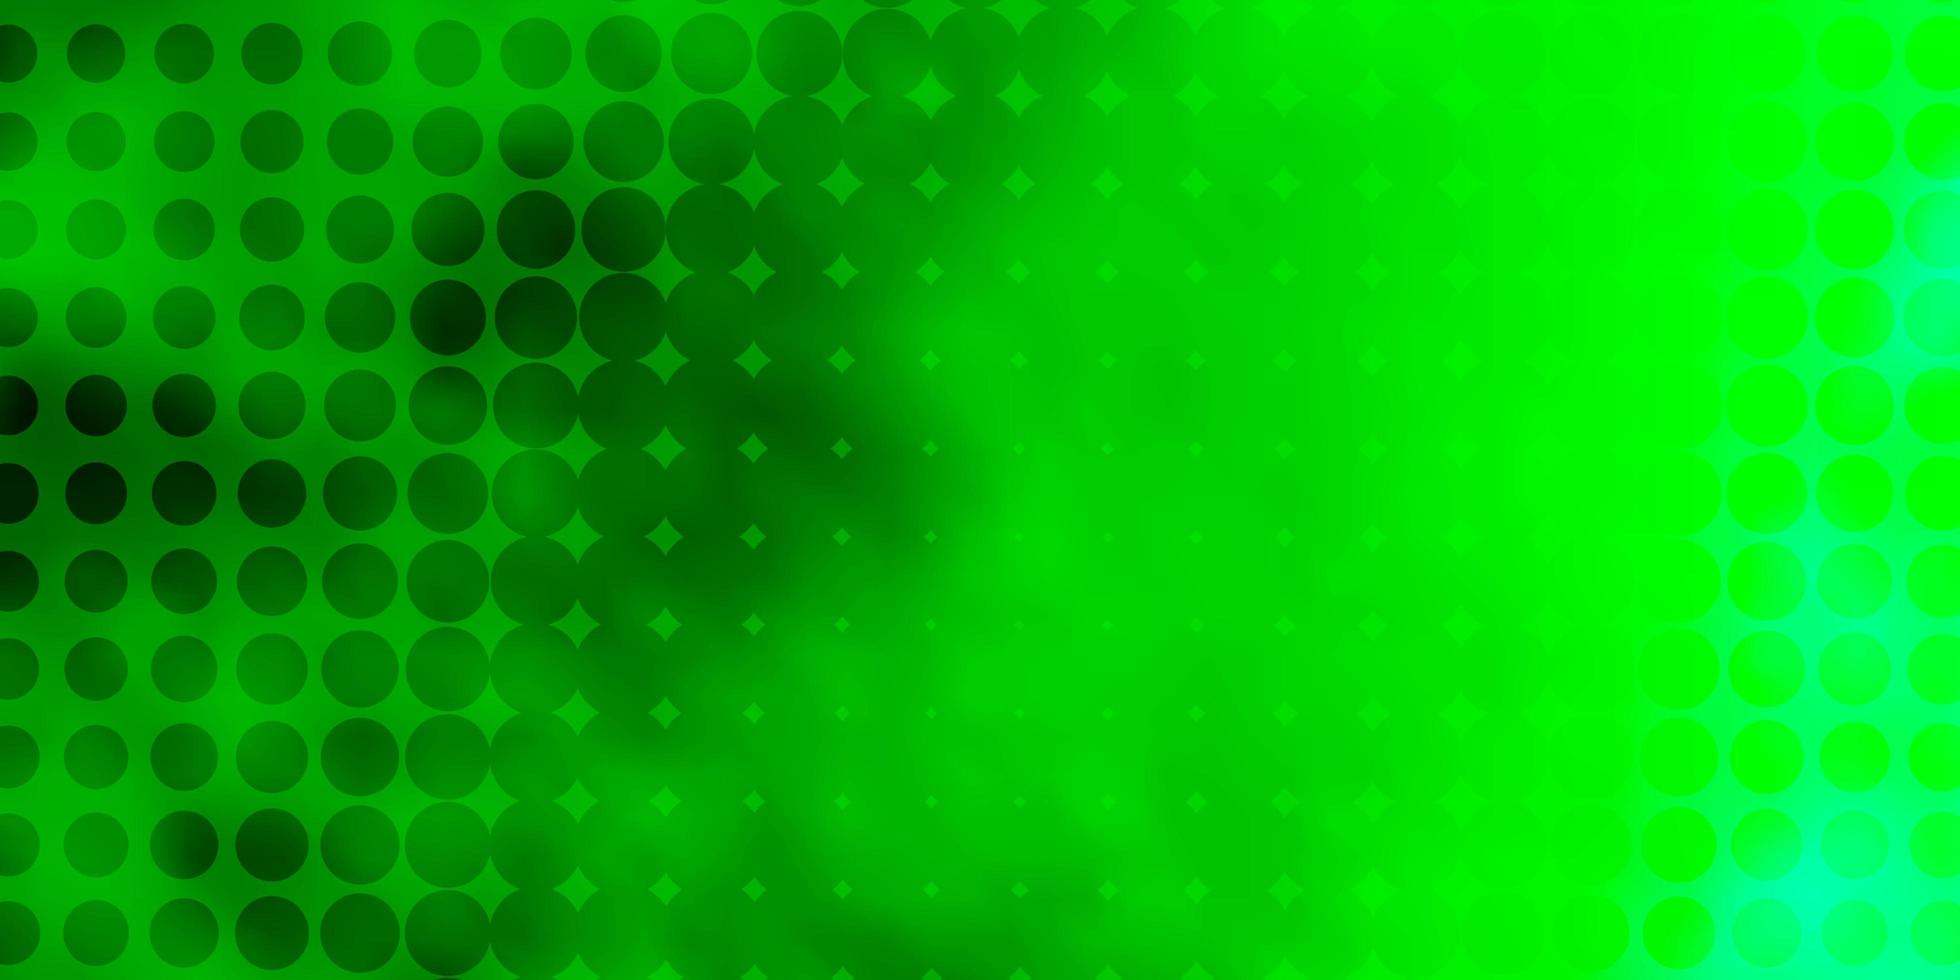 layout de vetor verde claro com formas de círculo.